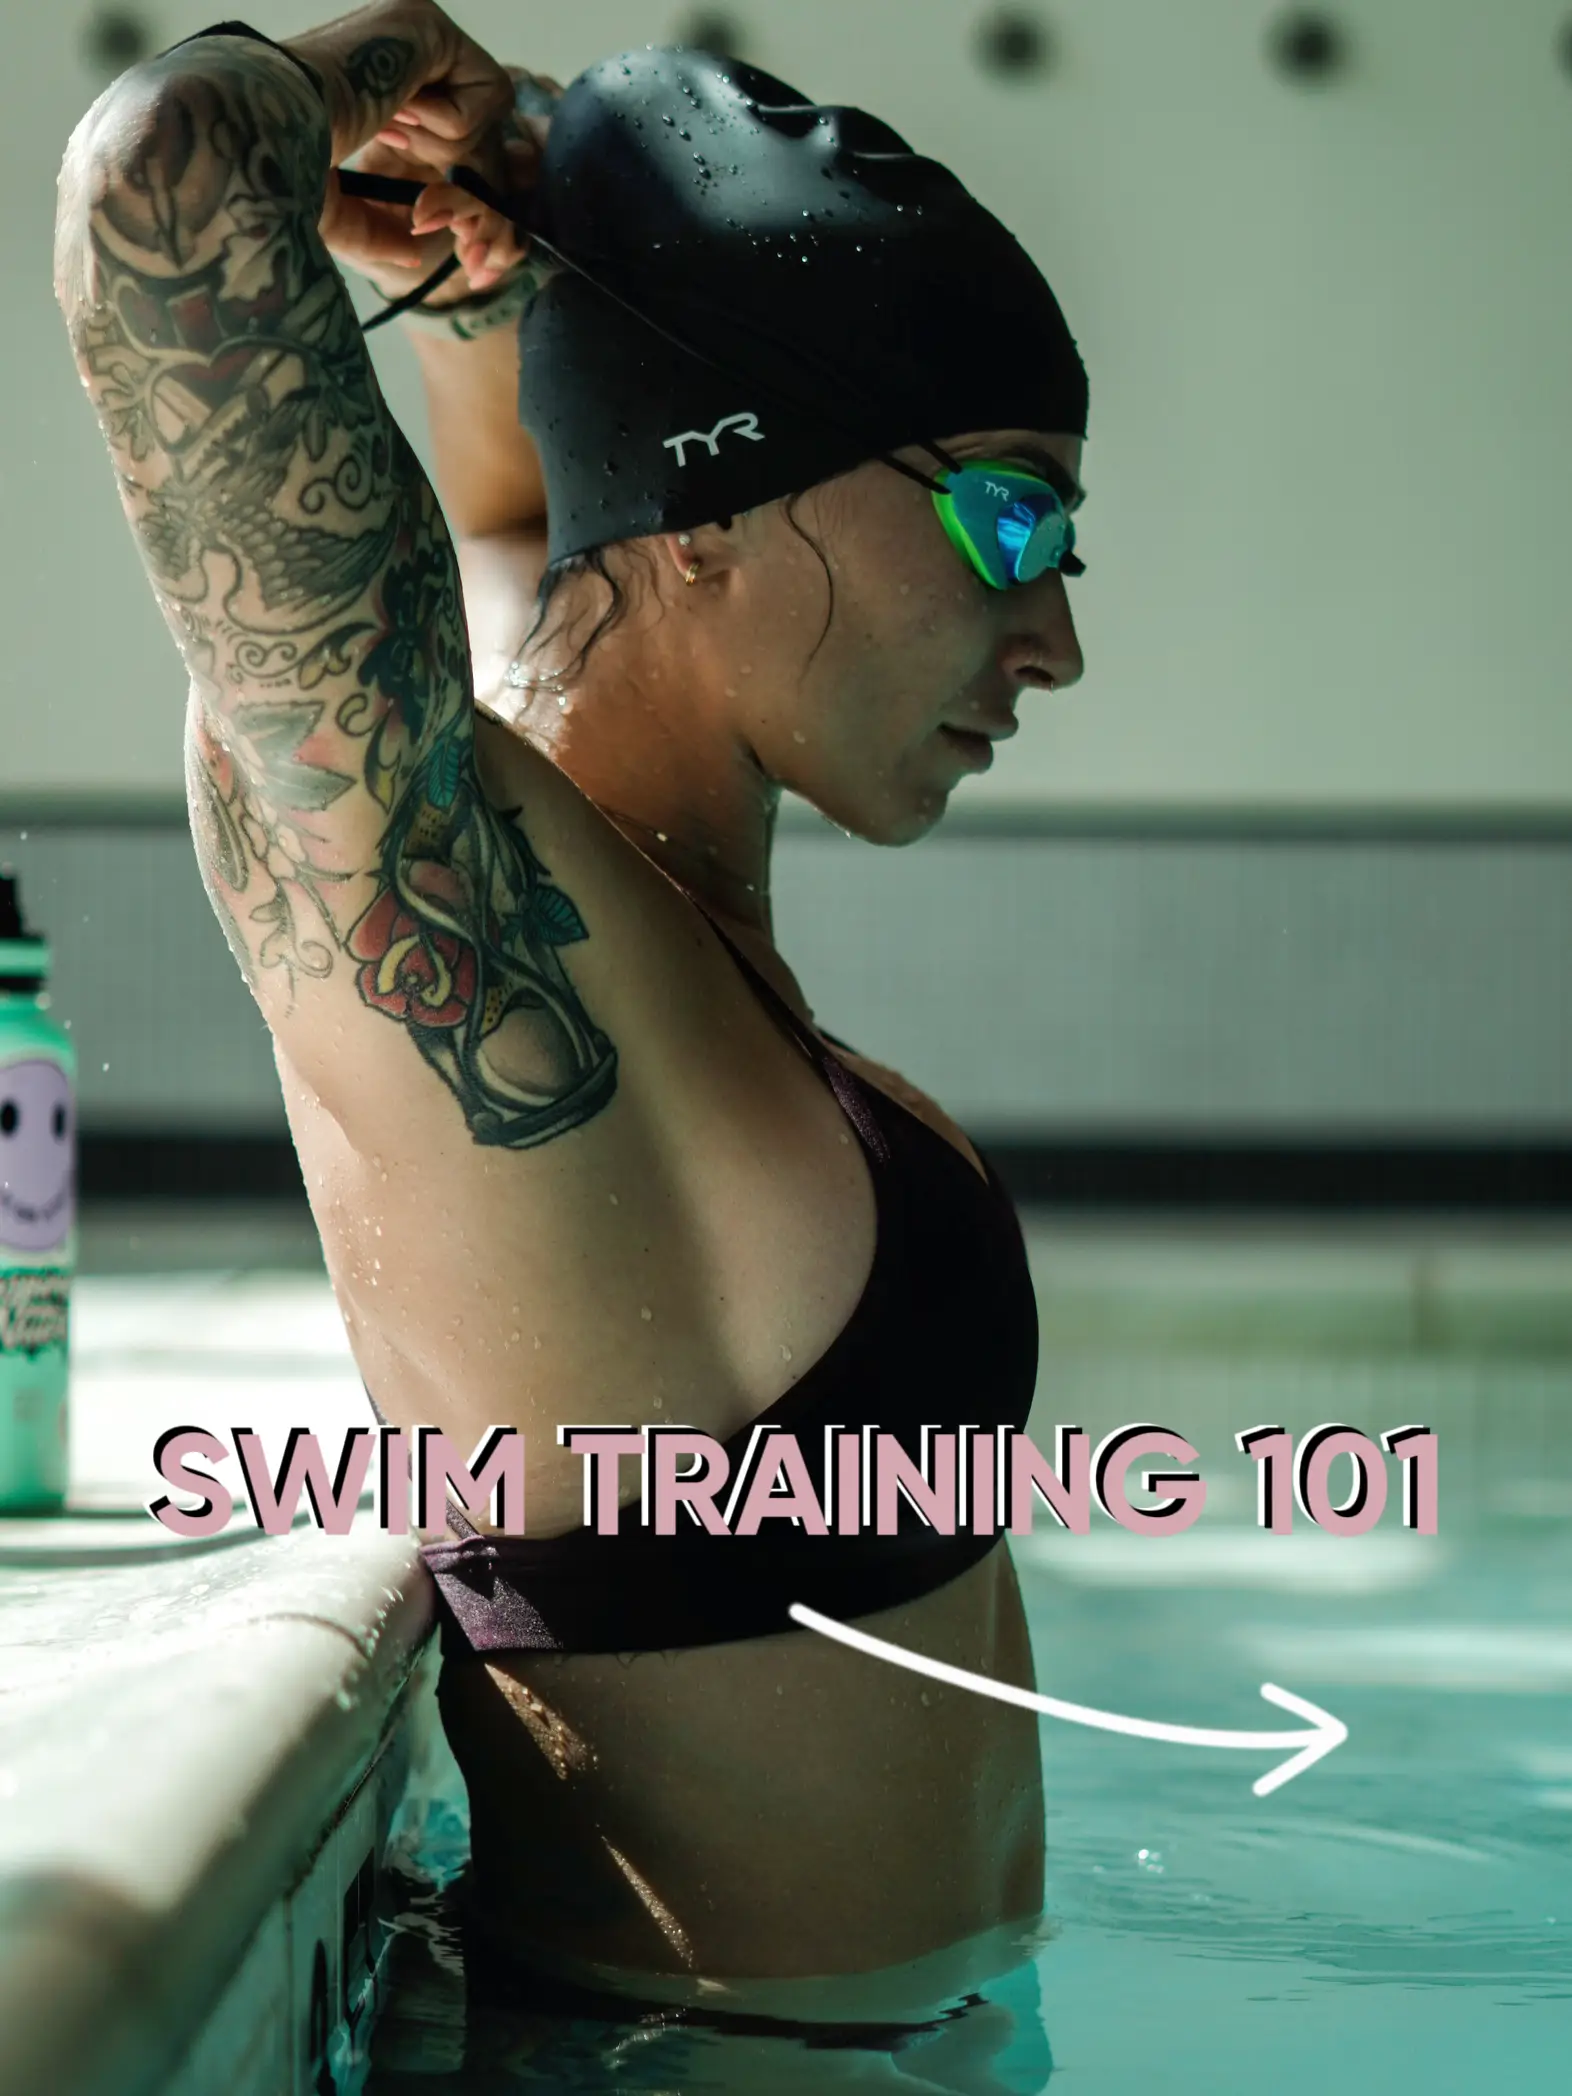 TYR Swim Trunks Training Cascading